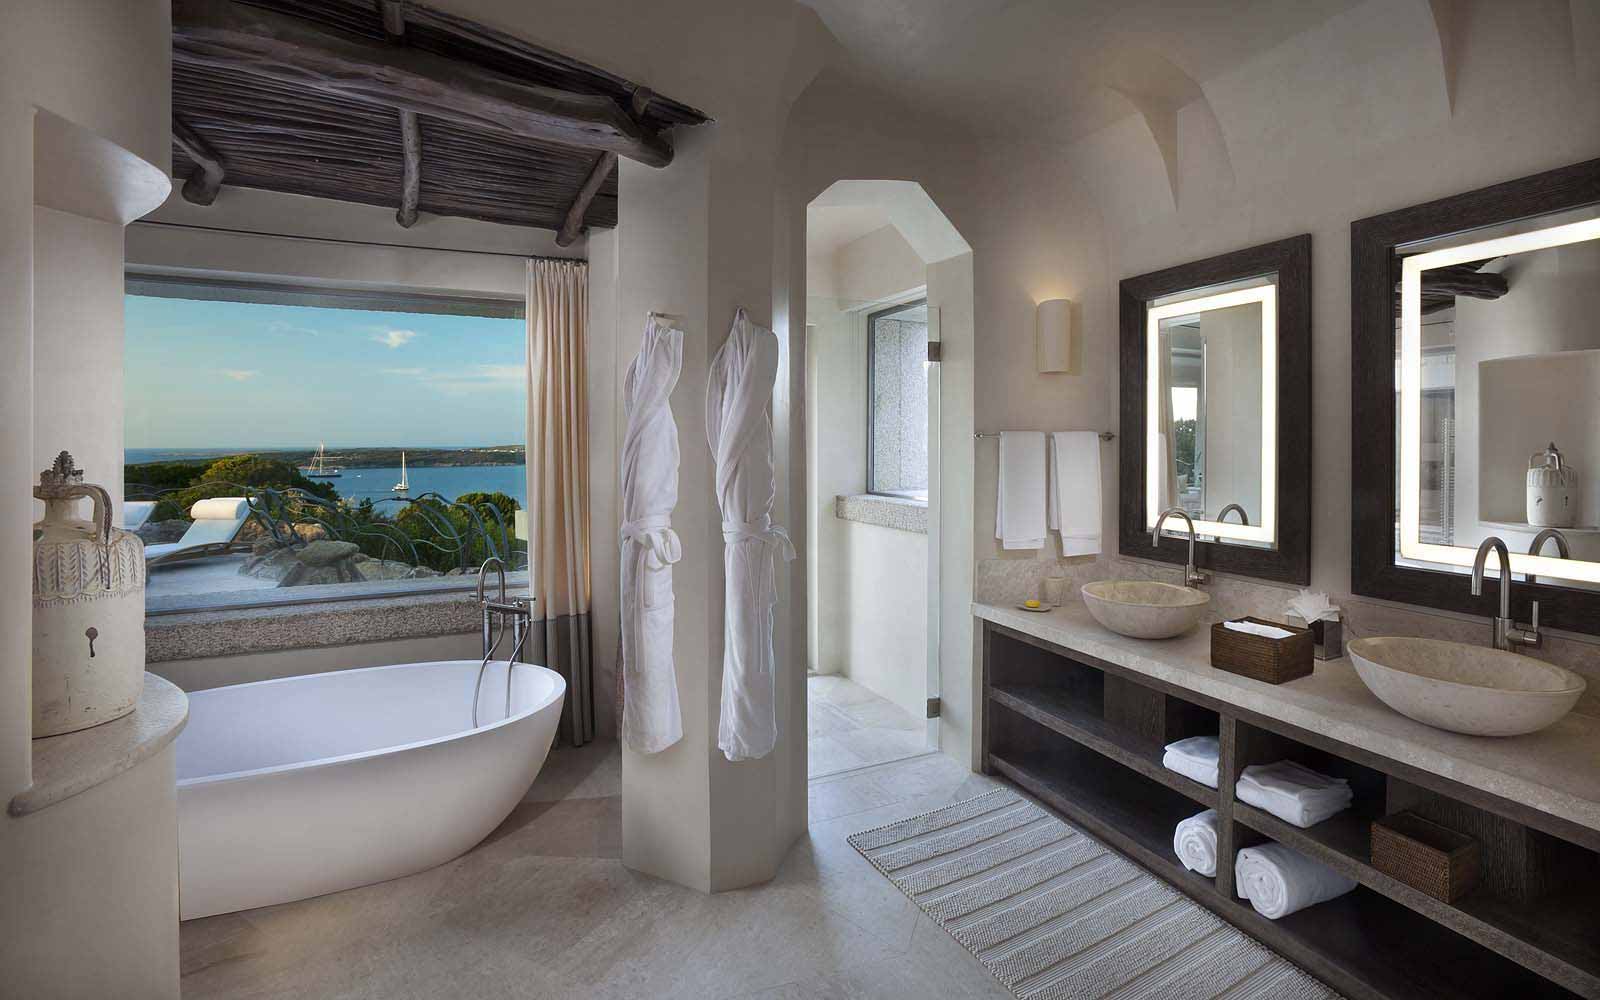 The bathroom of Unique Suite Baki at the Hotel Pitrizza